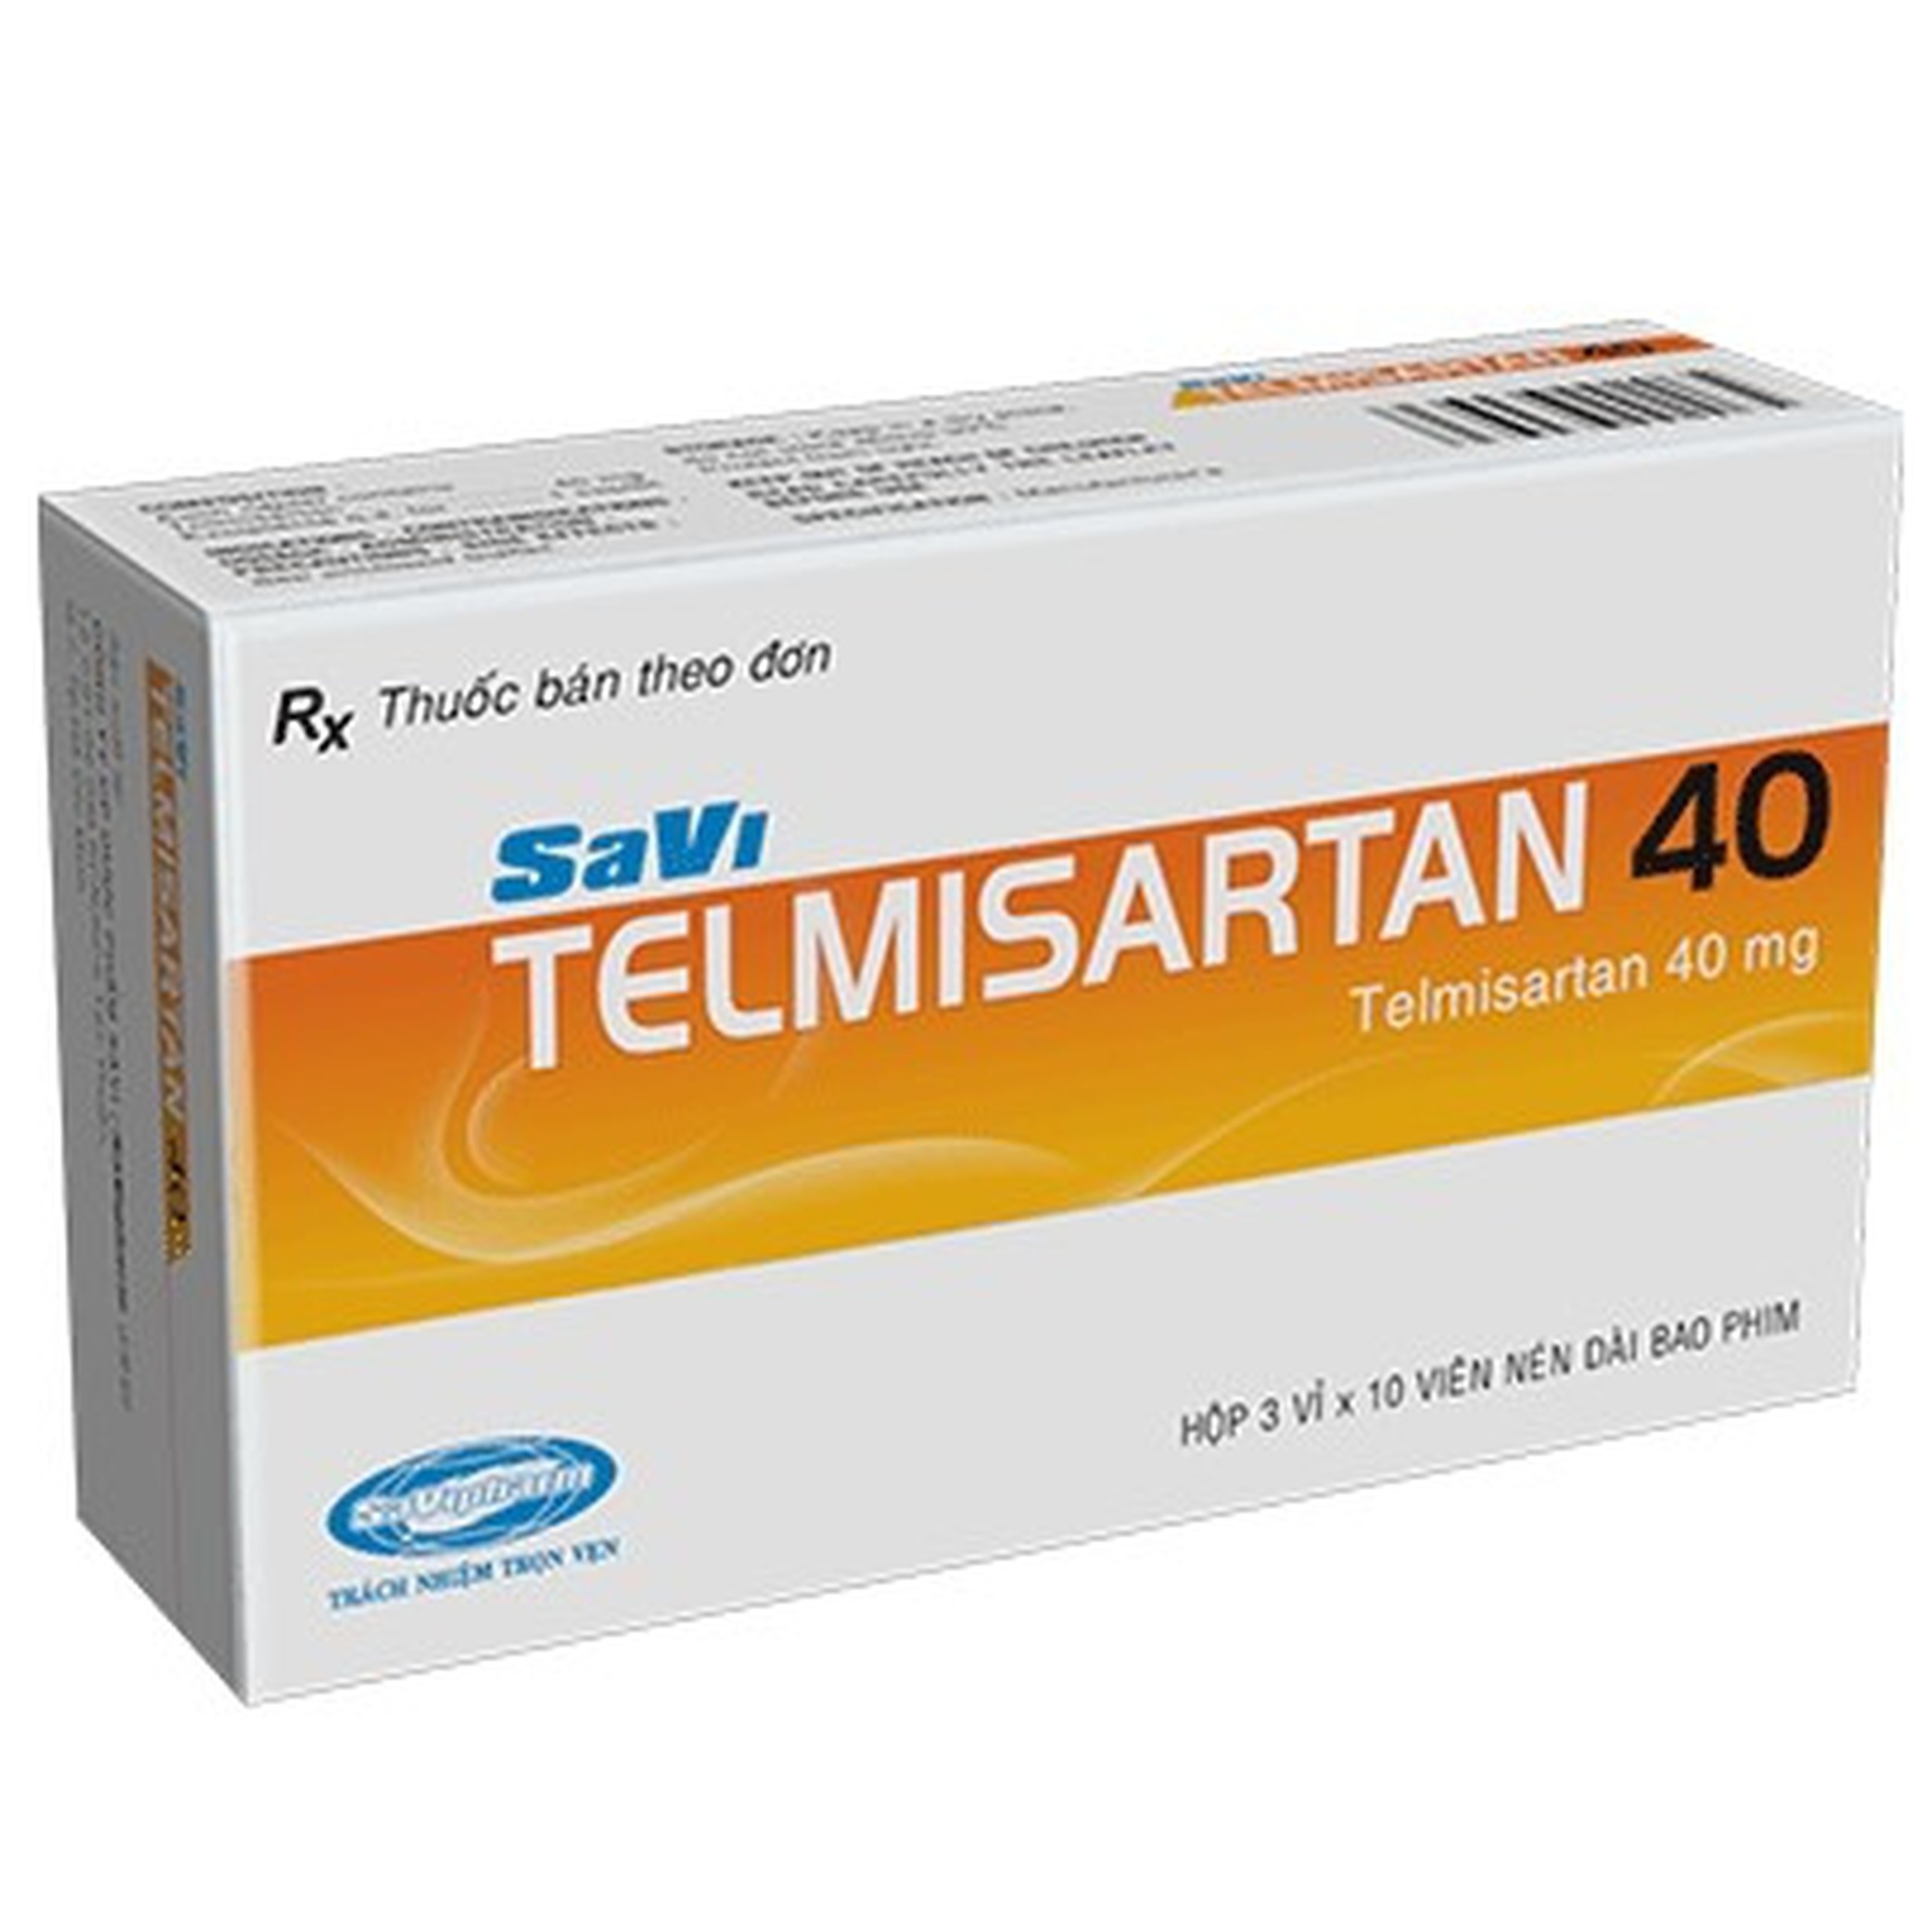 Thuốc Savi Telmisartan 40 điều trị tăng huyết áp (3 vỉ x 10 viên)